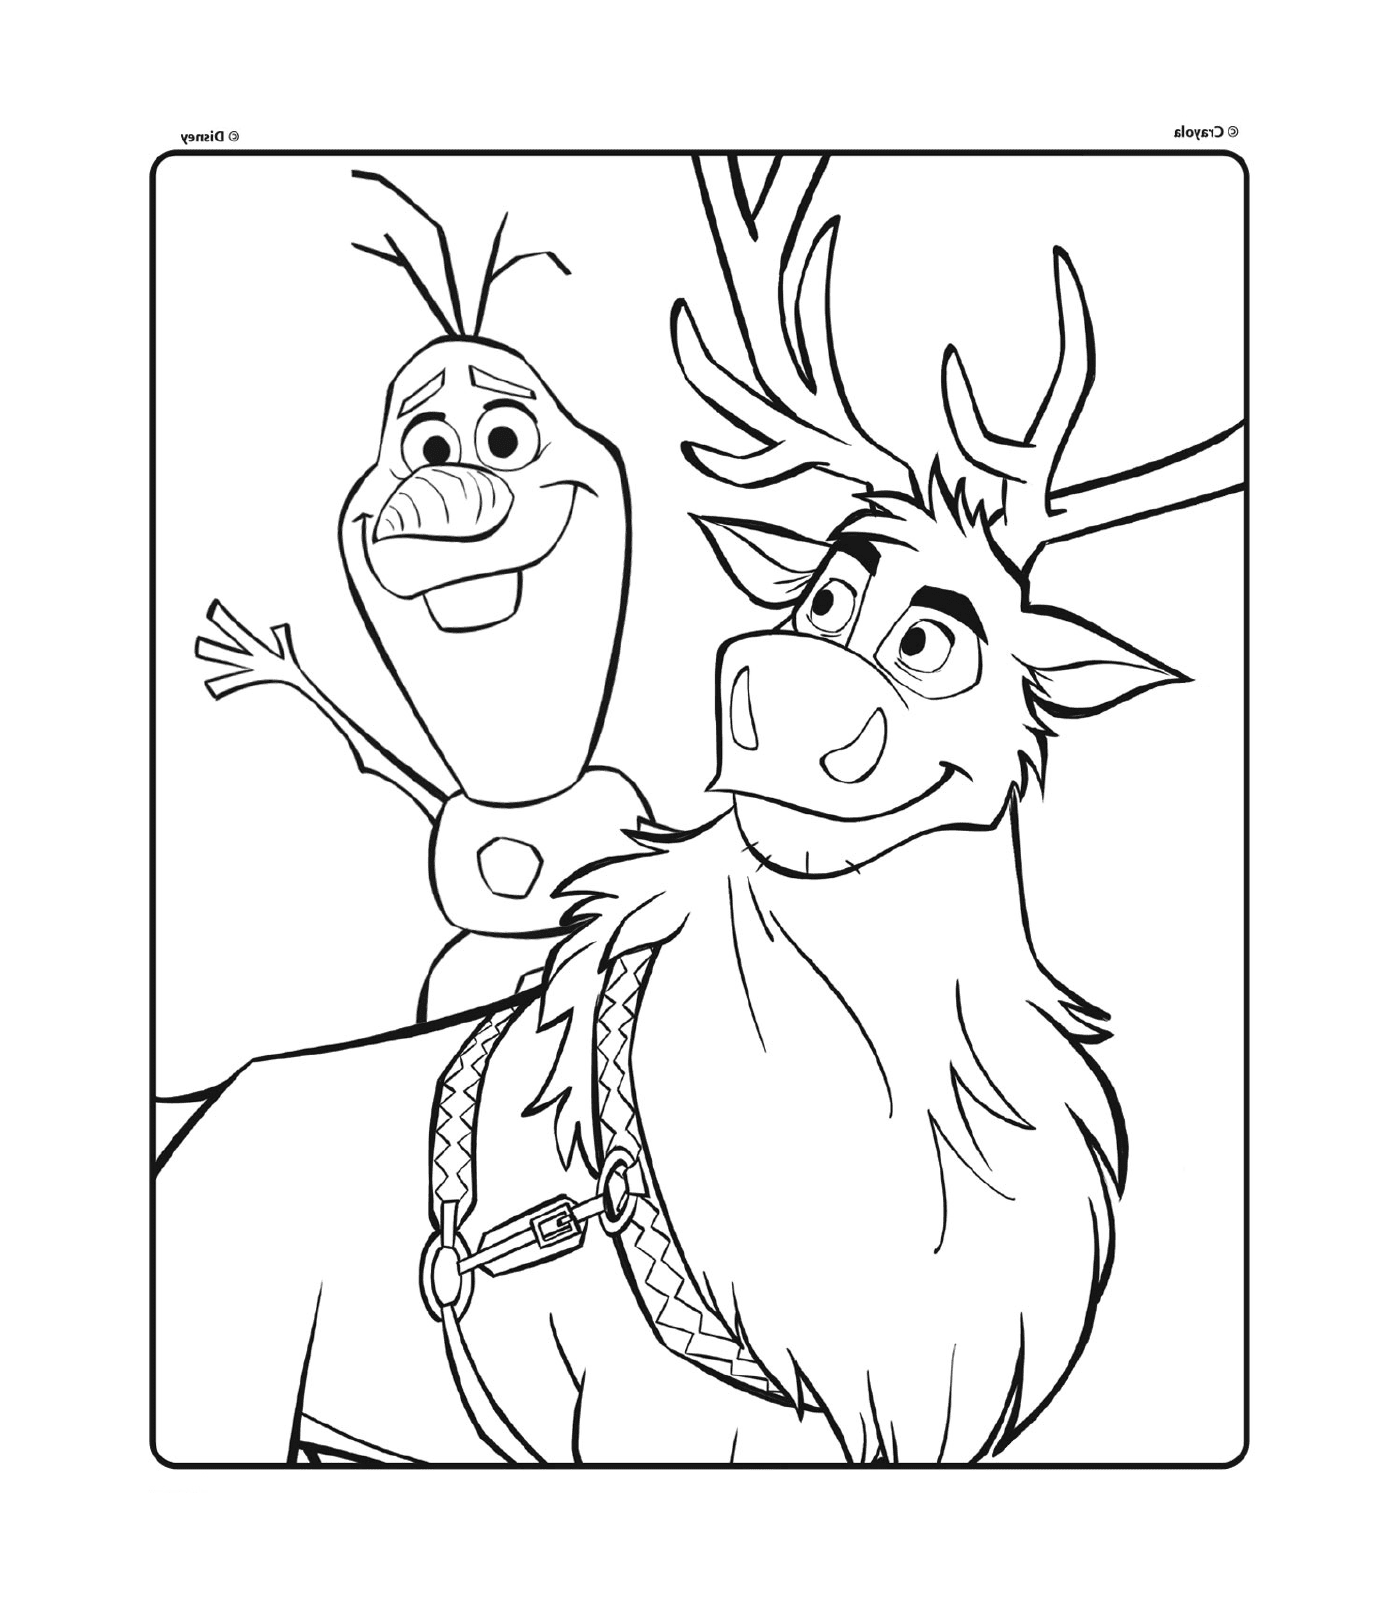  Olaf e Sven da Disney A Rainha da Neve 2 